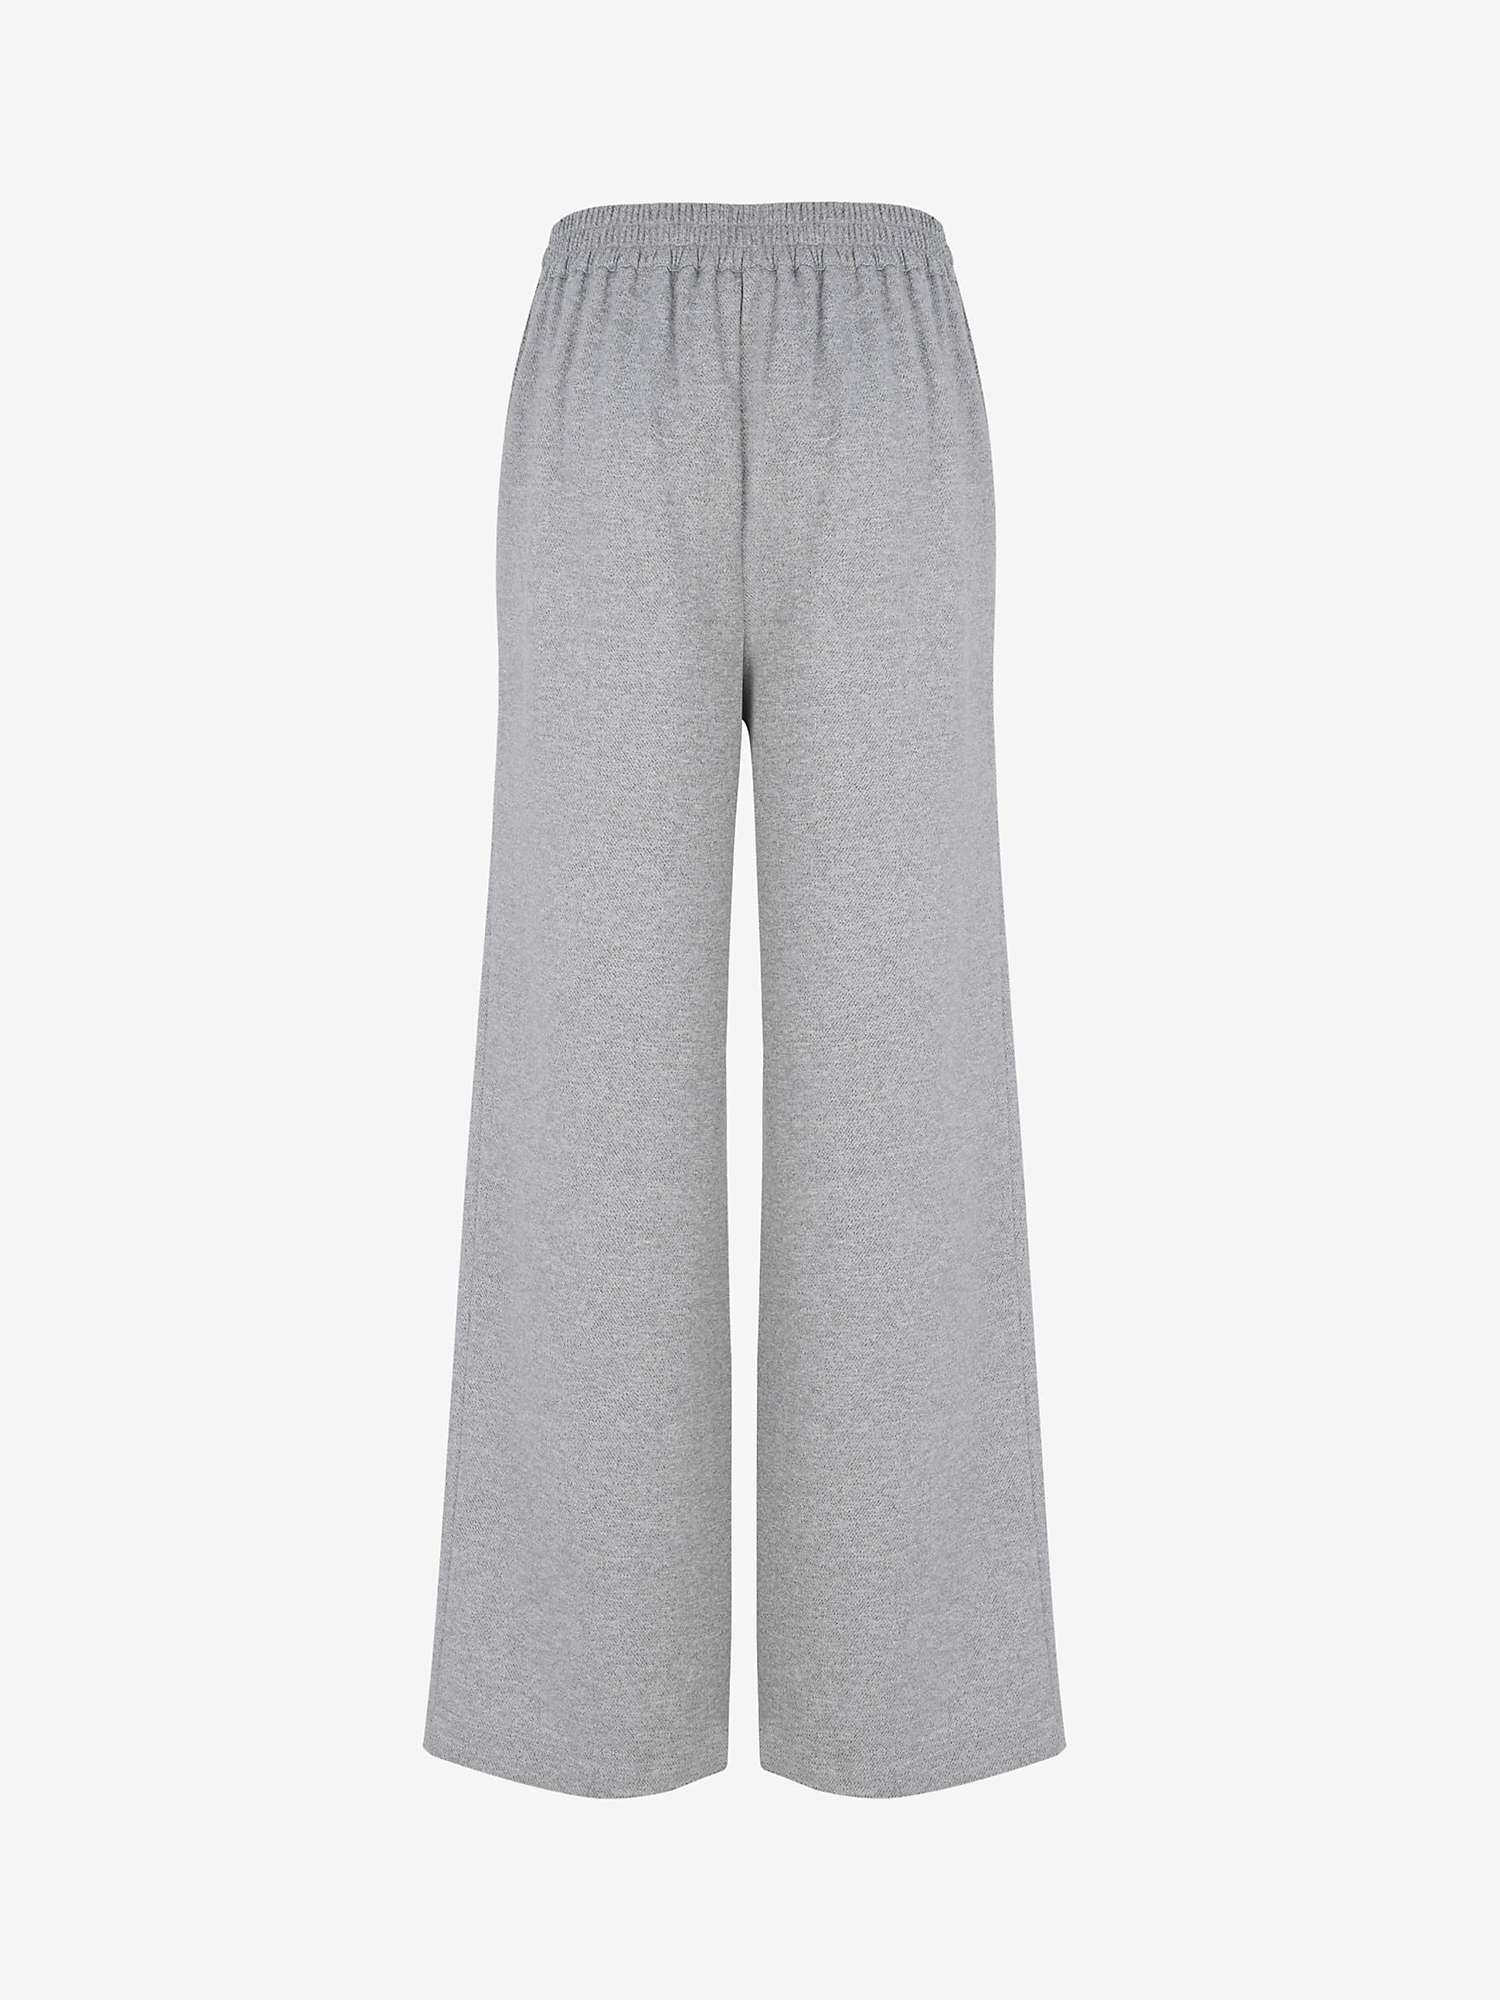 Buy Mint Velvet Wide Leg Trousers, Light Grey Online at johnlewis.com